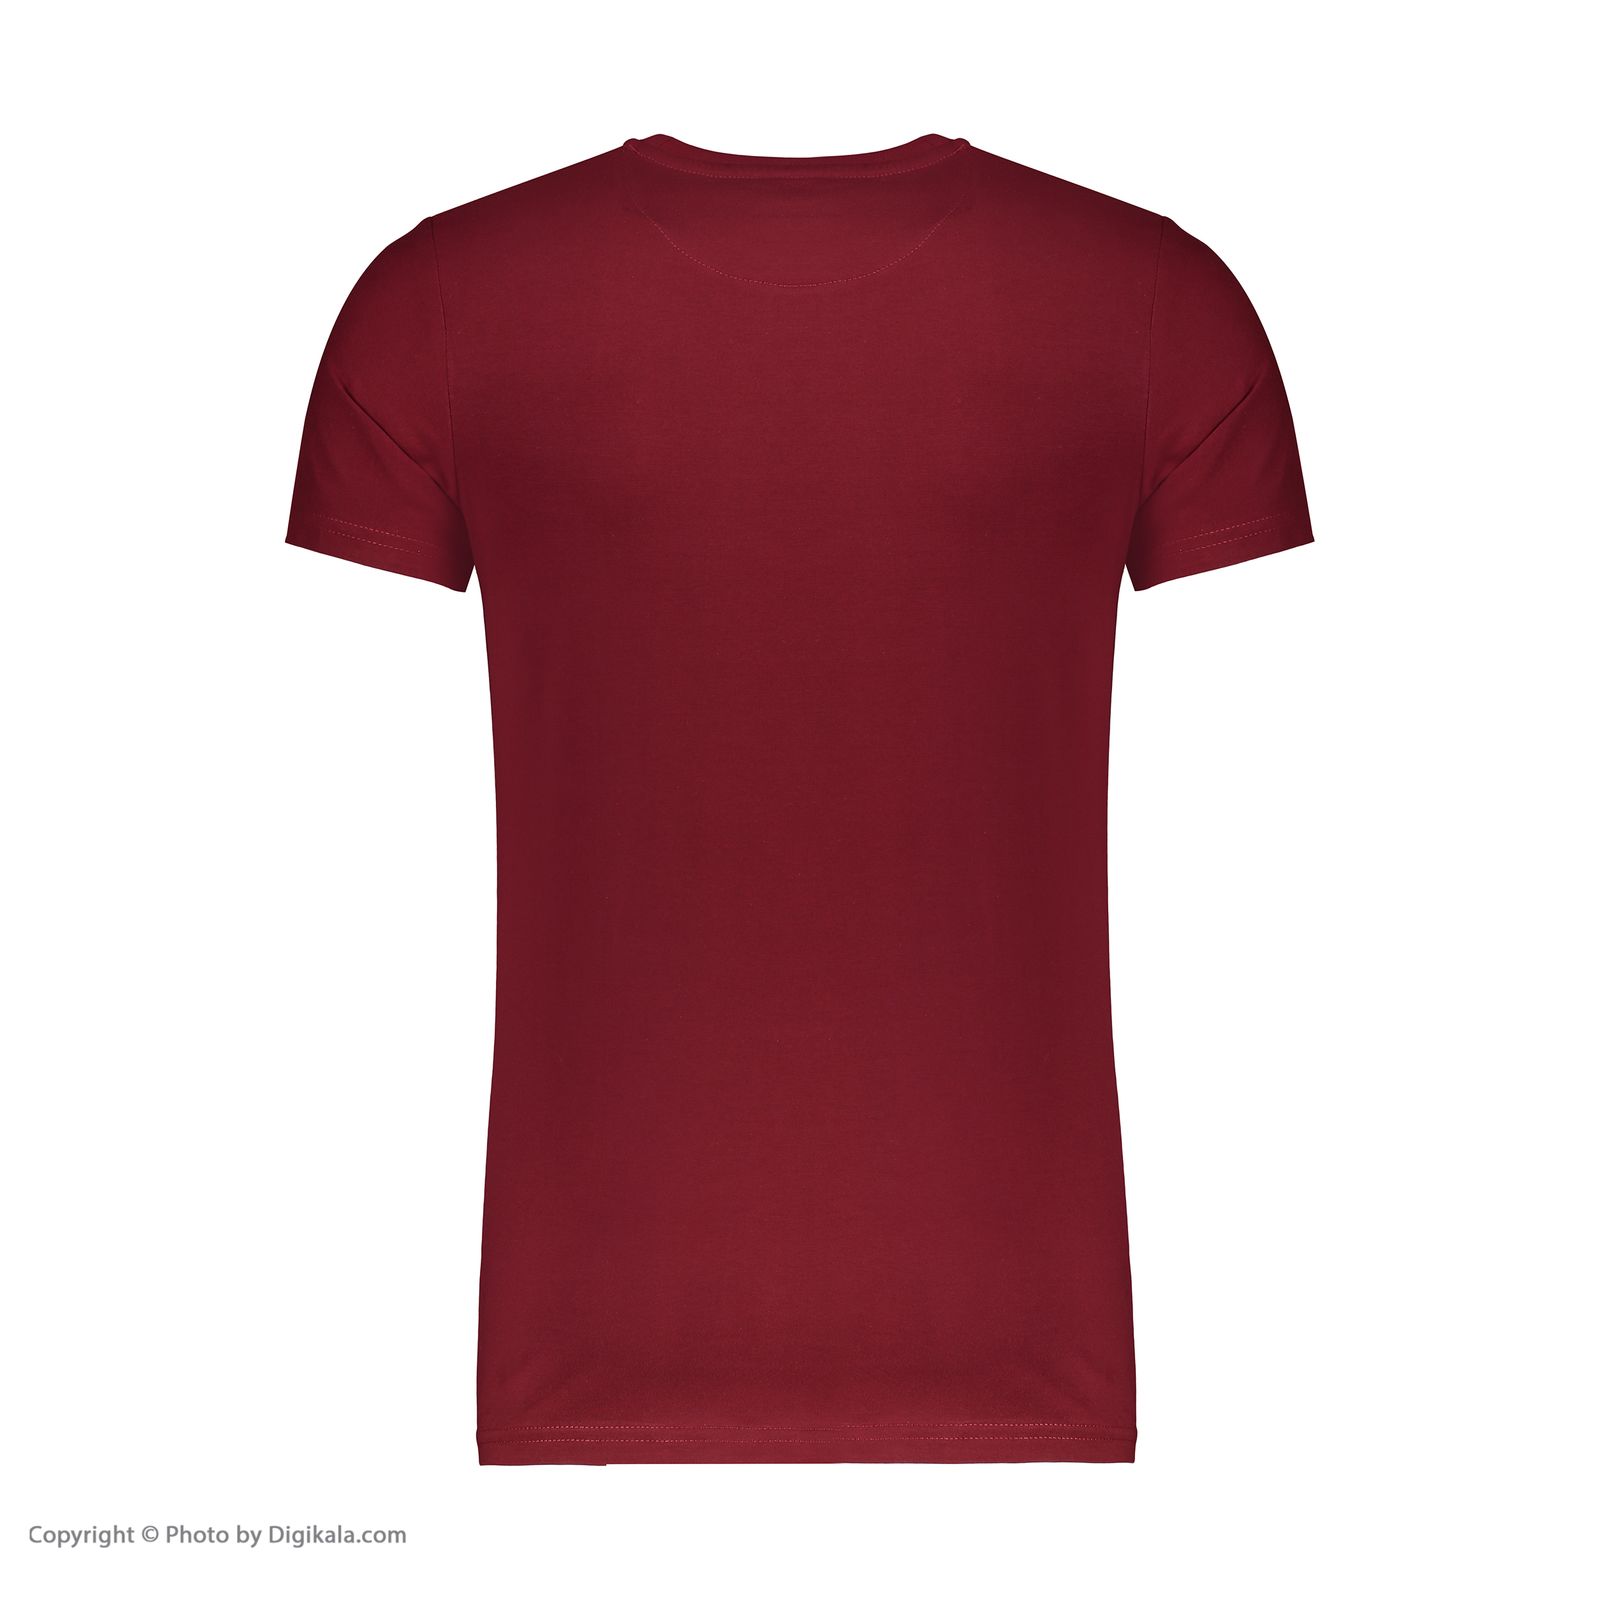 تی شرت ورزشی مردانه بی فور ران مدل 980318-74 - قرمز تیره - 4